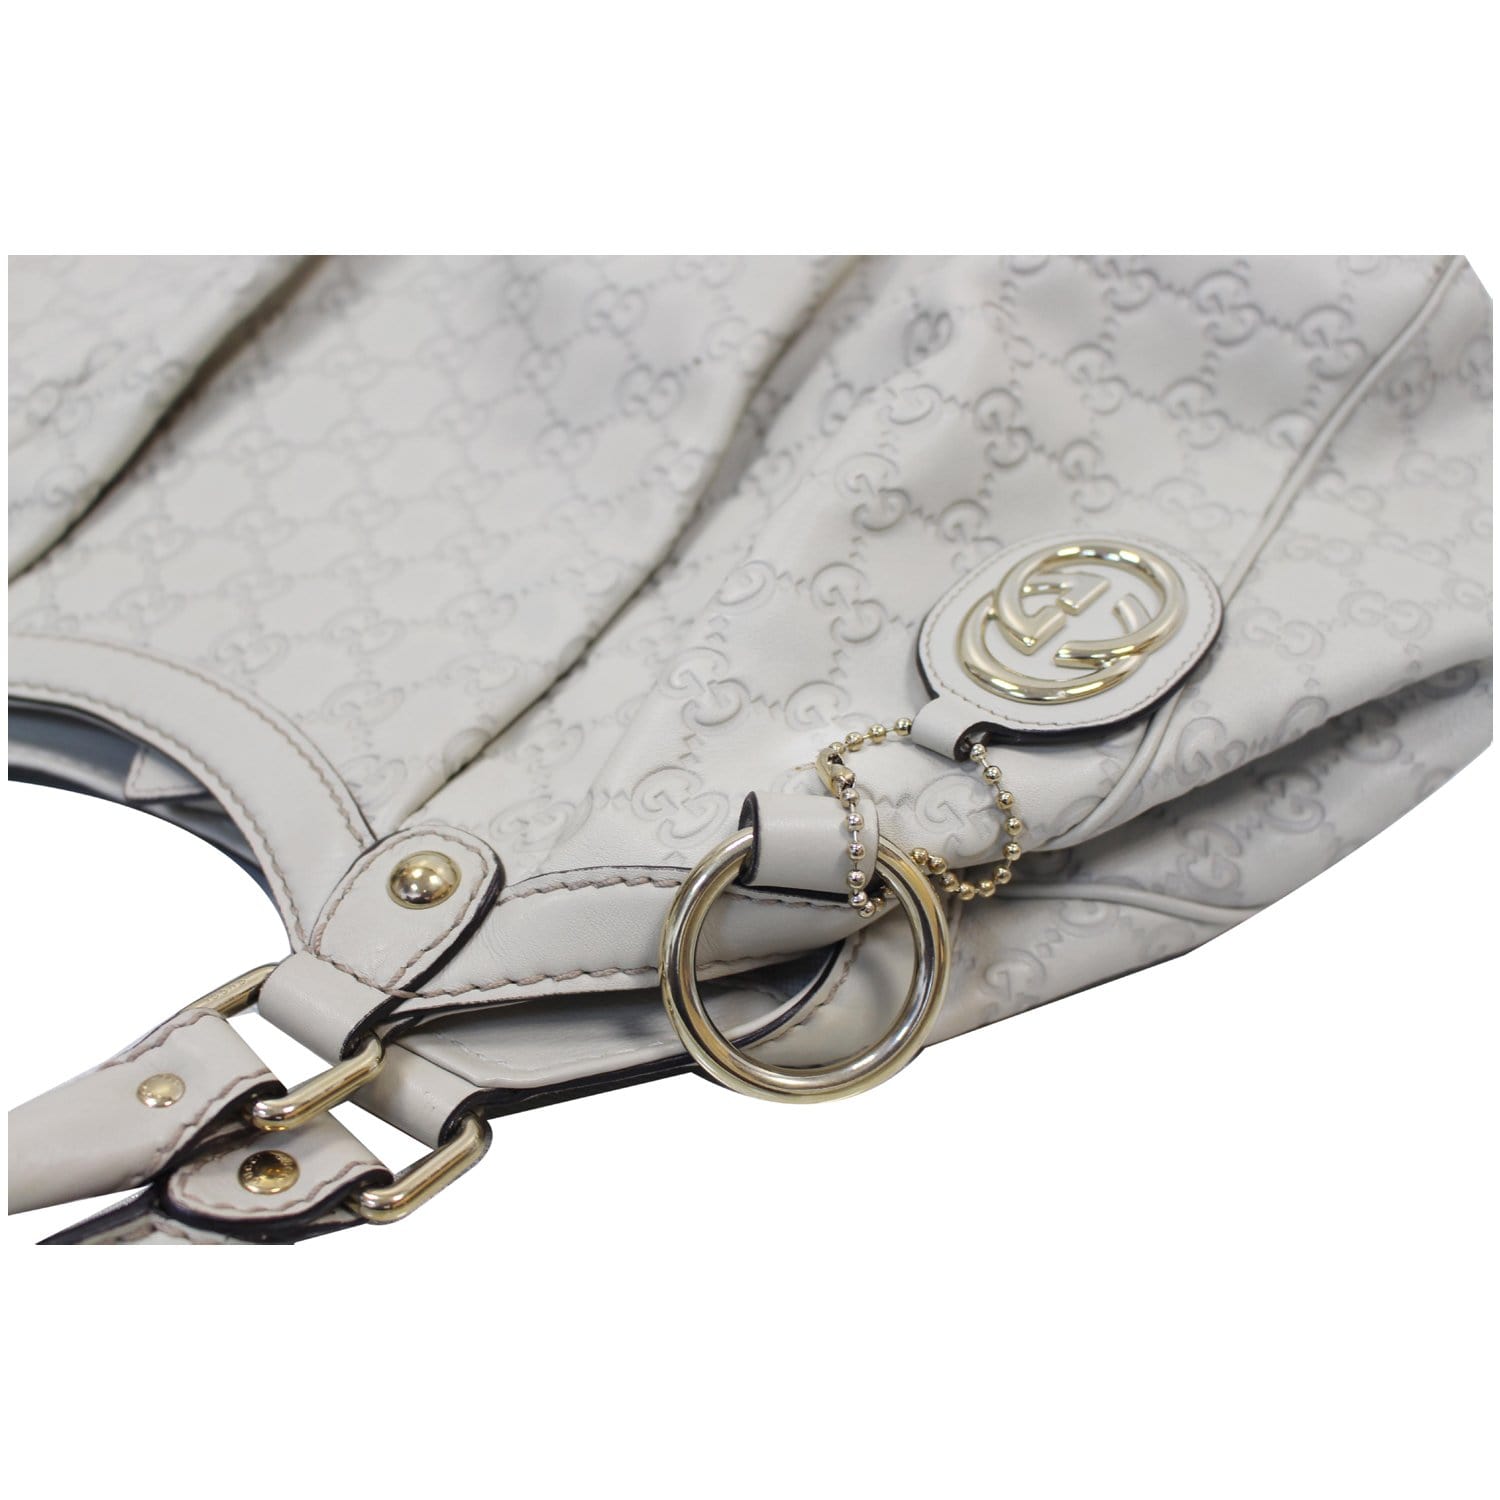 GUCCI Sukey Medium Guccissima Leather Tote Bag White 211944